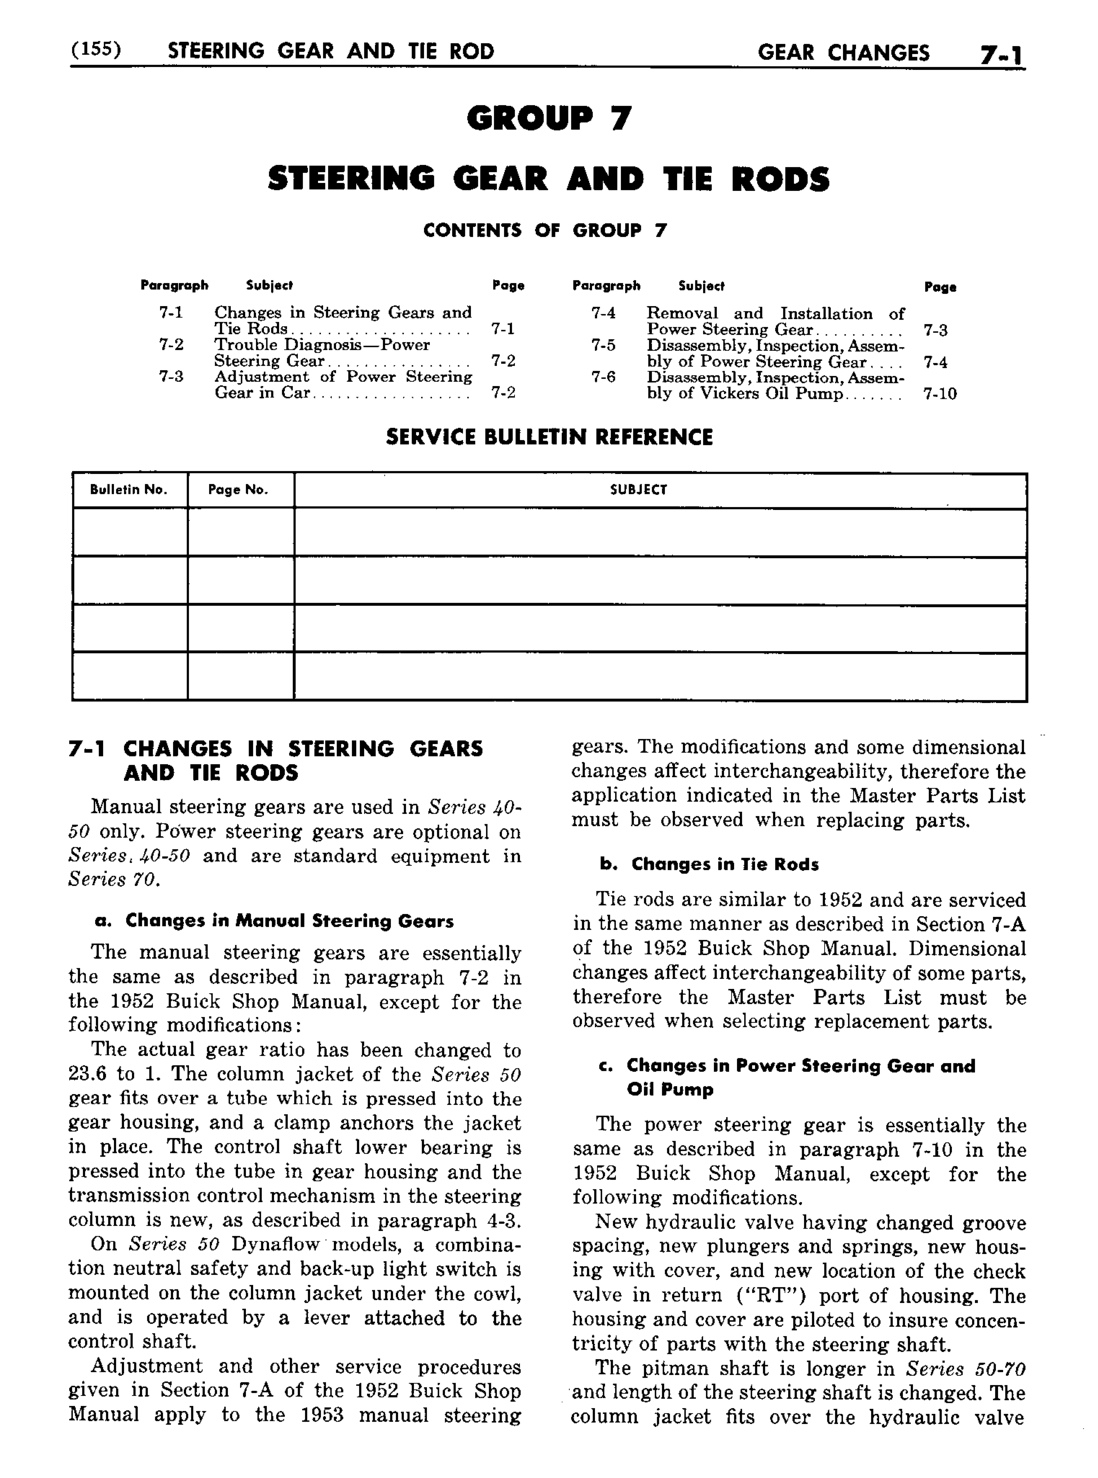 n_08 1953 Buick Shop Manual - Steering-001-001.jpg